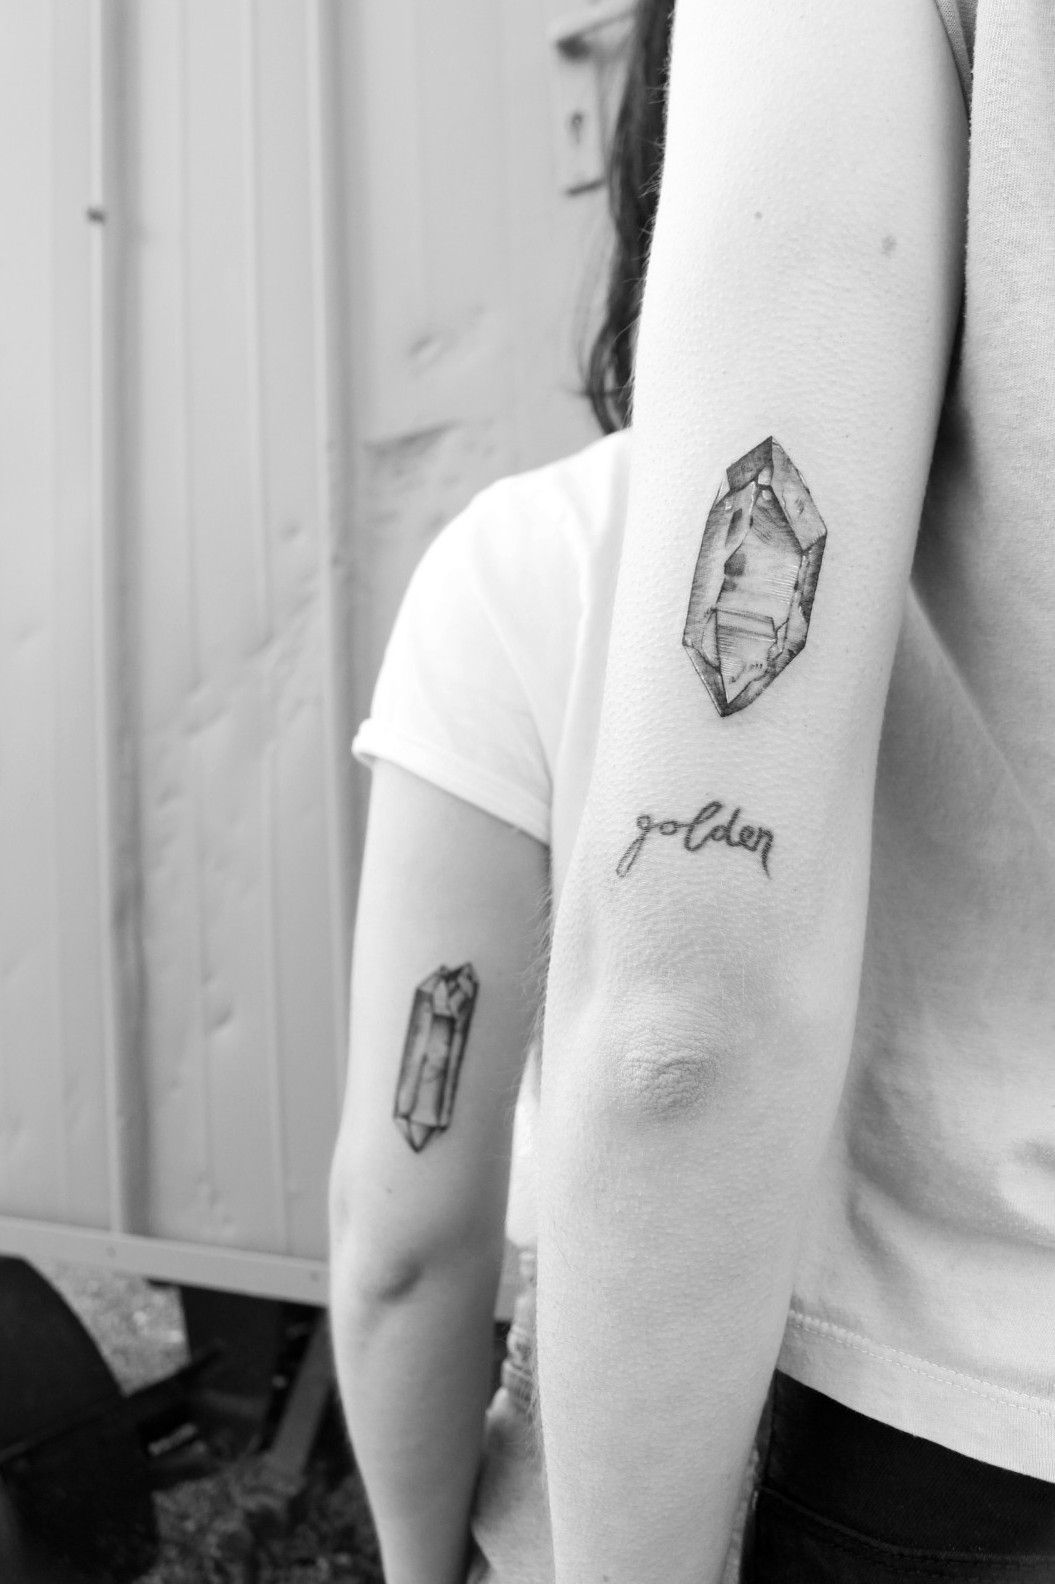 crystal wand tattoo☁️ | Tattoos, Wand tattoo, Fairy tattoo